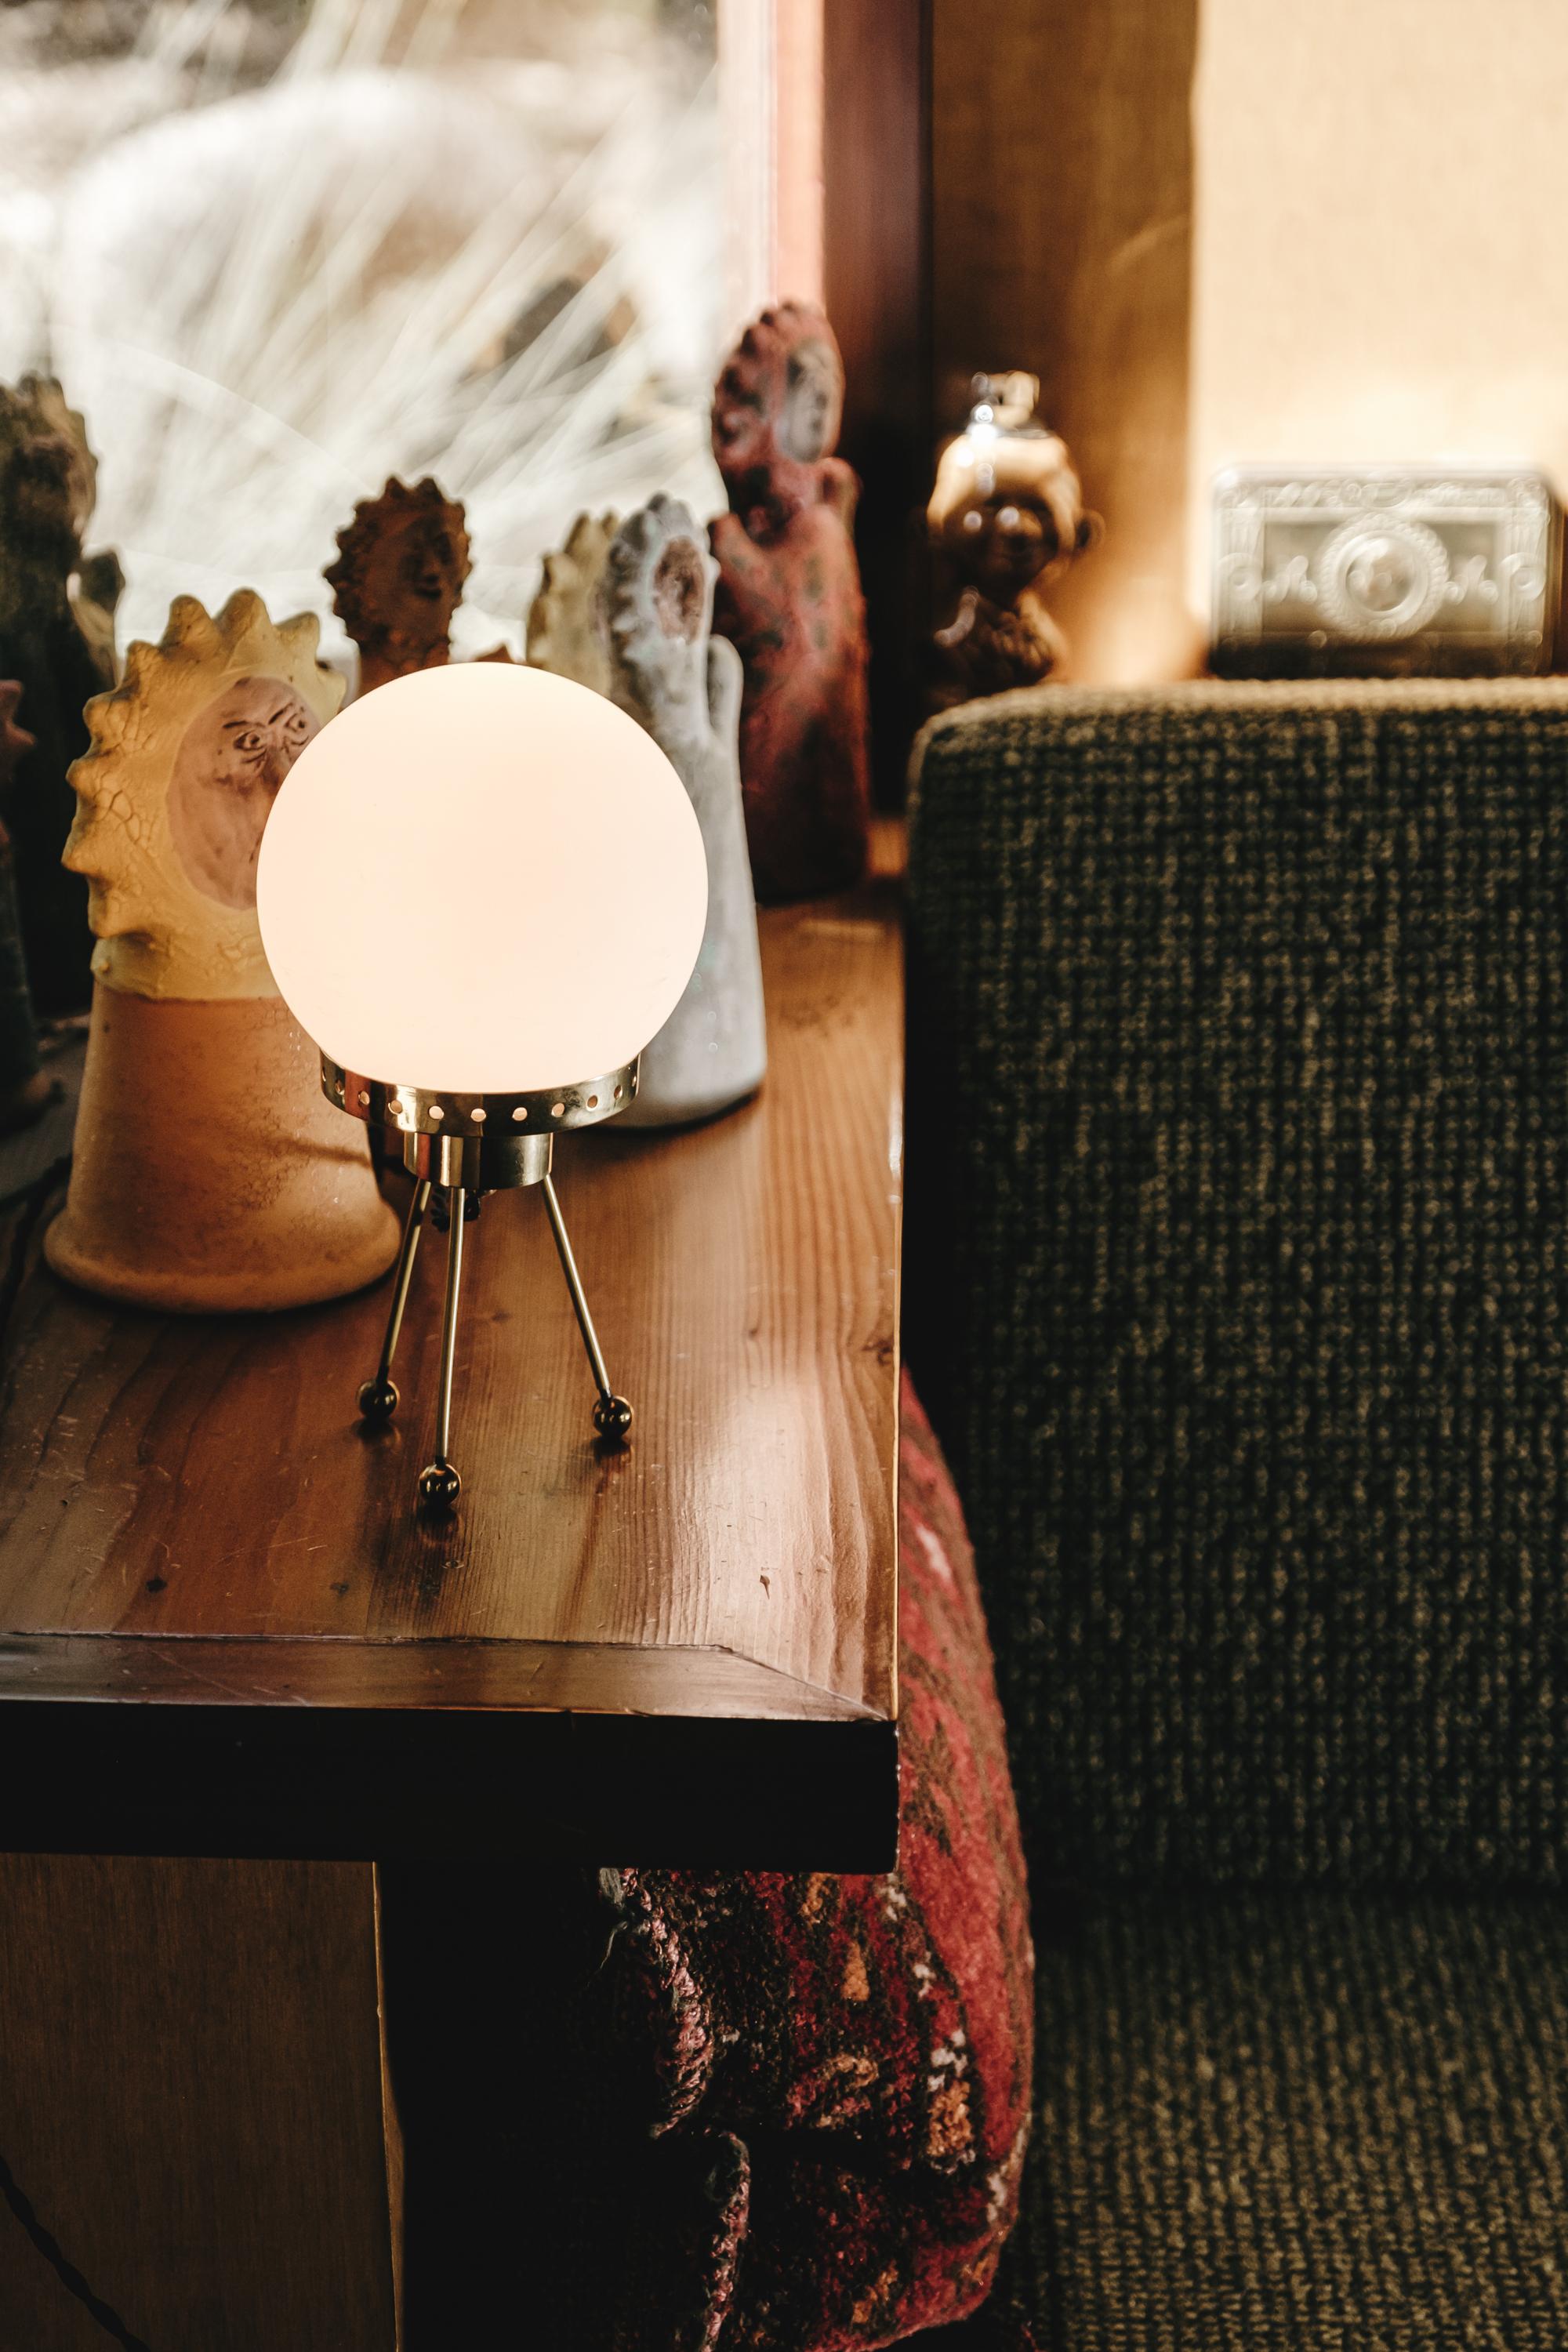 lampe de table tripode en verre opalin des années 1950 attribuée à Stilnovo. Cette lampe de table élégamment sculpturale est caractéristique de l'esthétique très raffinée de l'éclairage italien du milieu du siècle dernier, incarnée par la légendaire